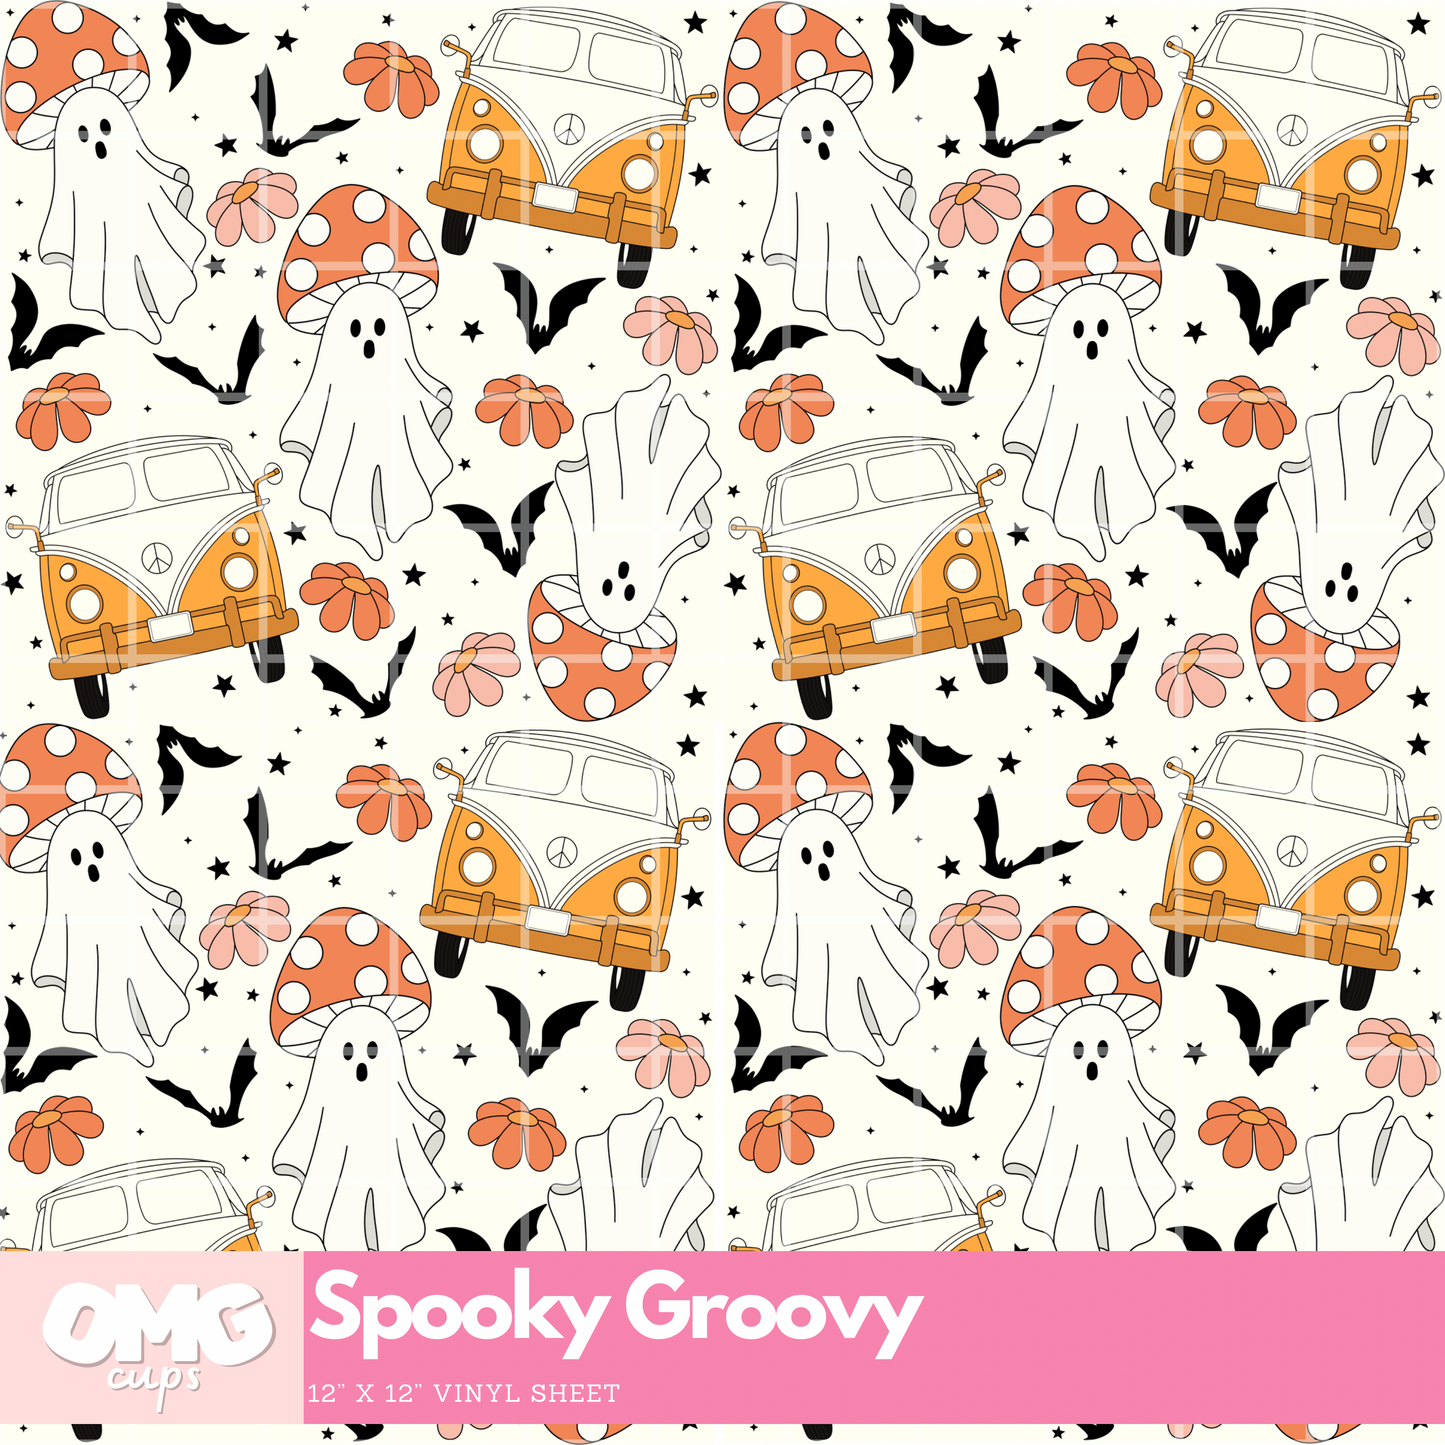 Spooky Groovy: 12x12 Vinyl Sheet